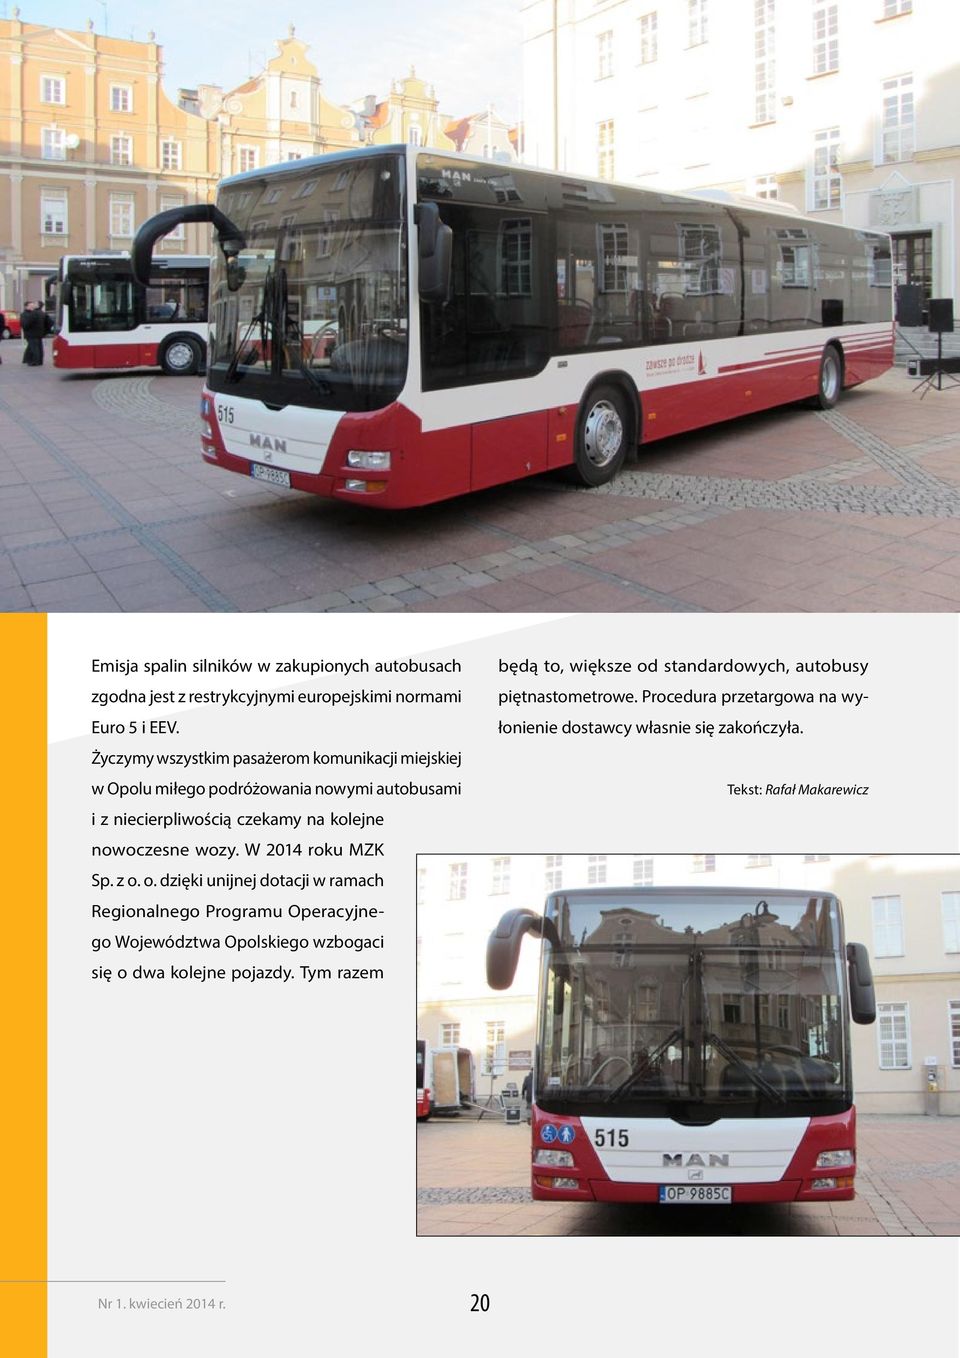 W 2014 roku MZK Sp. z o. o. dzięki unijnej dotacji w ramach Regionalnego Programu Operacyjnego Województwa Opolskiego wzbogaci się o dwa kolejne pojazdy.